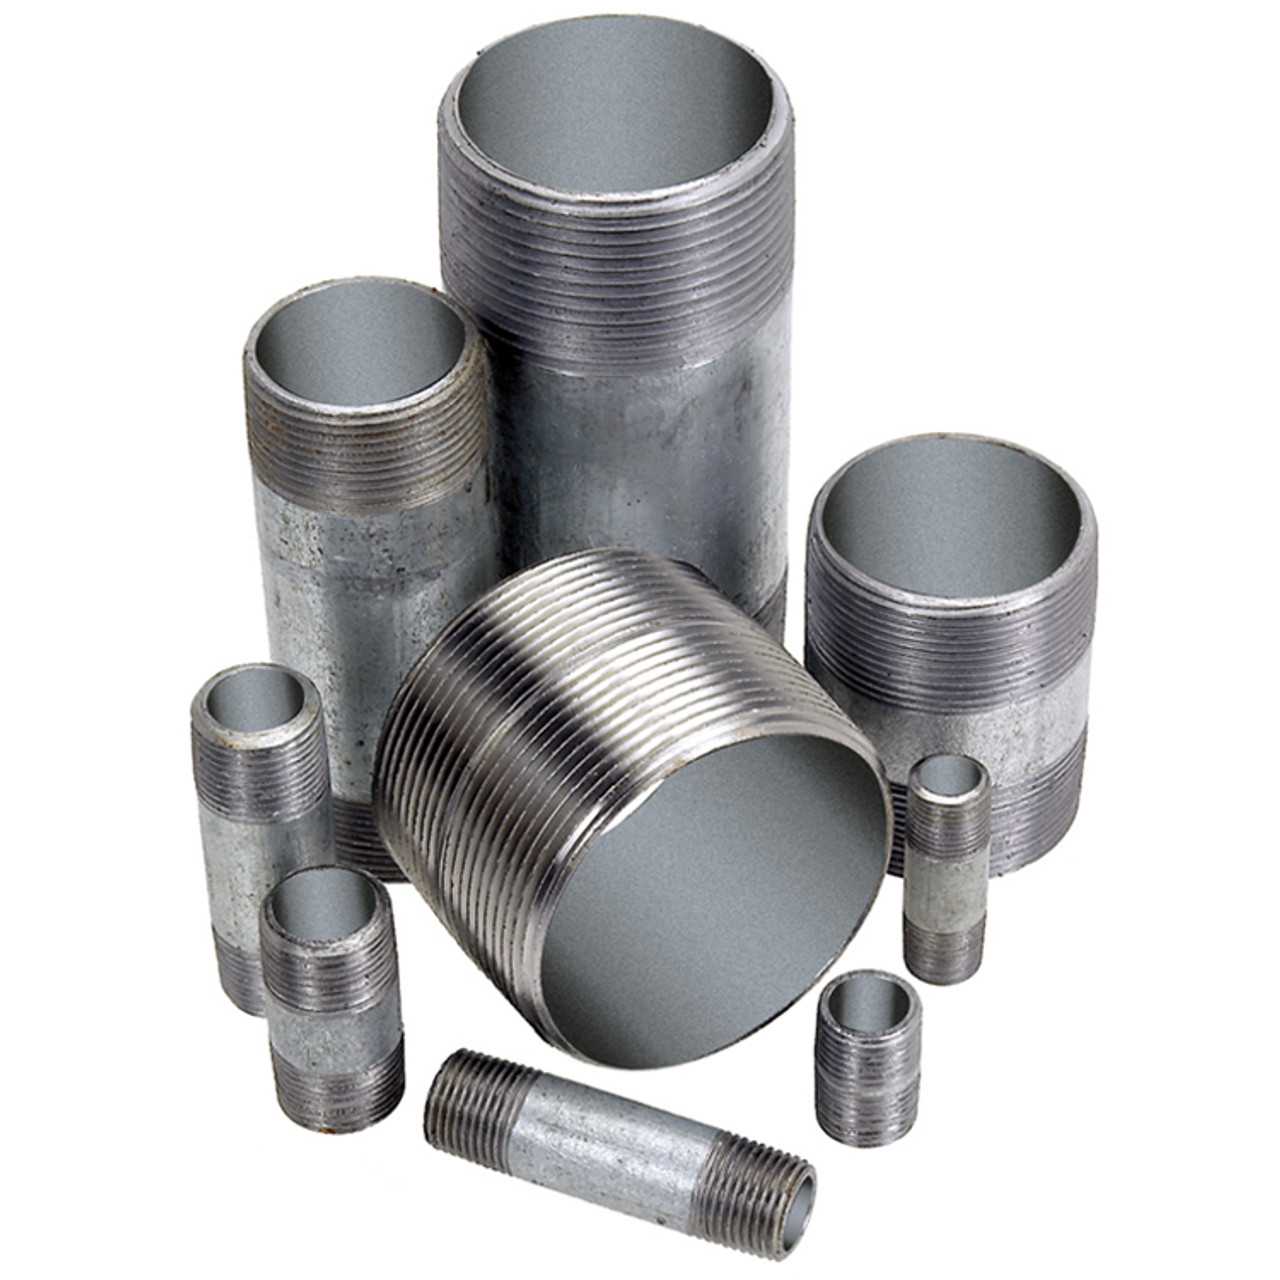 1/4 x 6" Sch. 40 Galvanized Steel Male NPT Nipple   G1616G-025X6